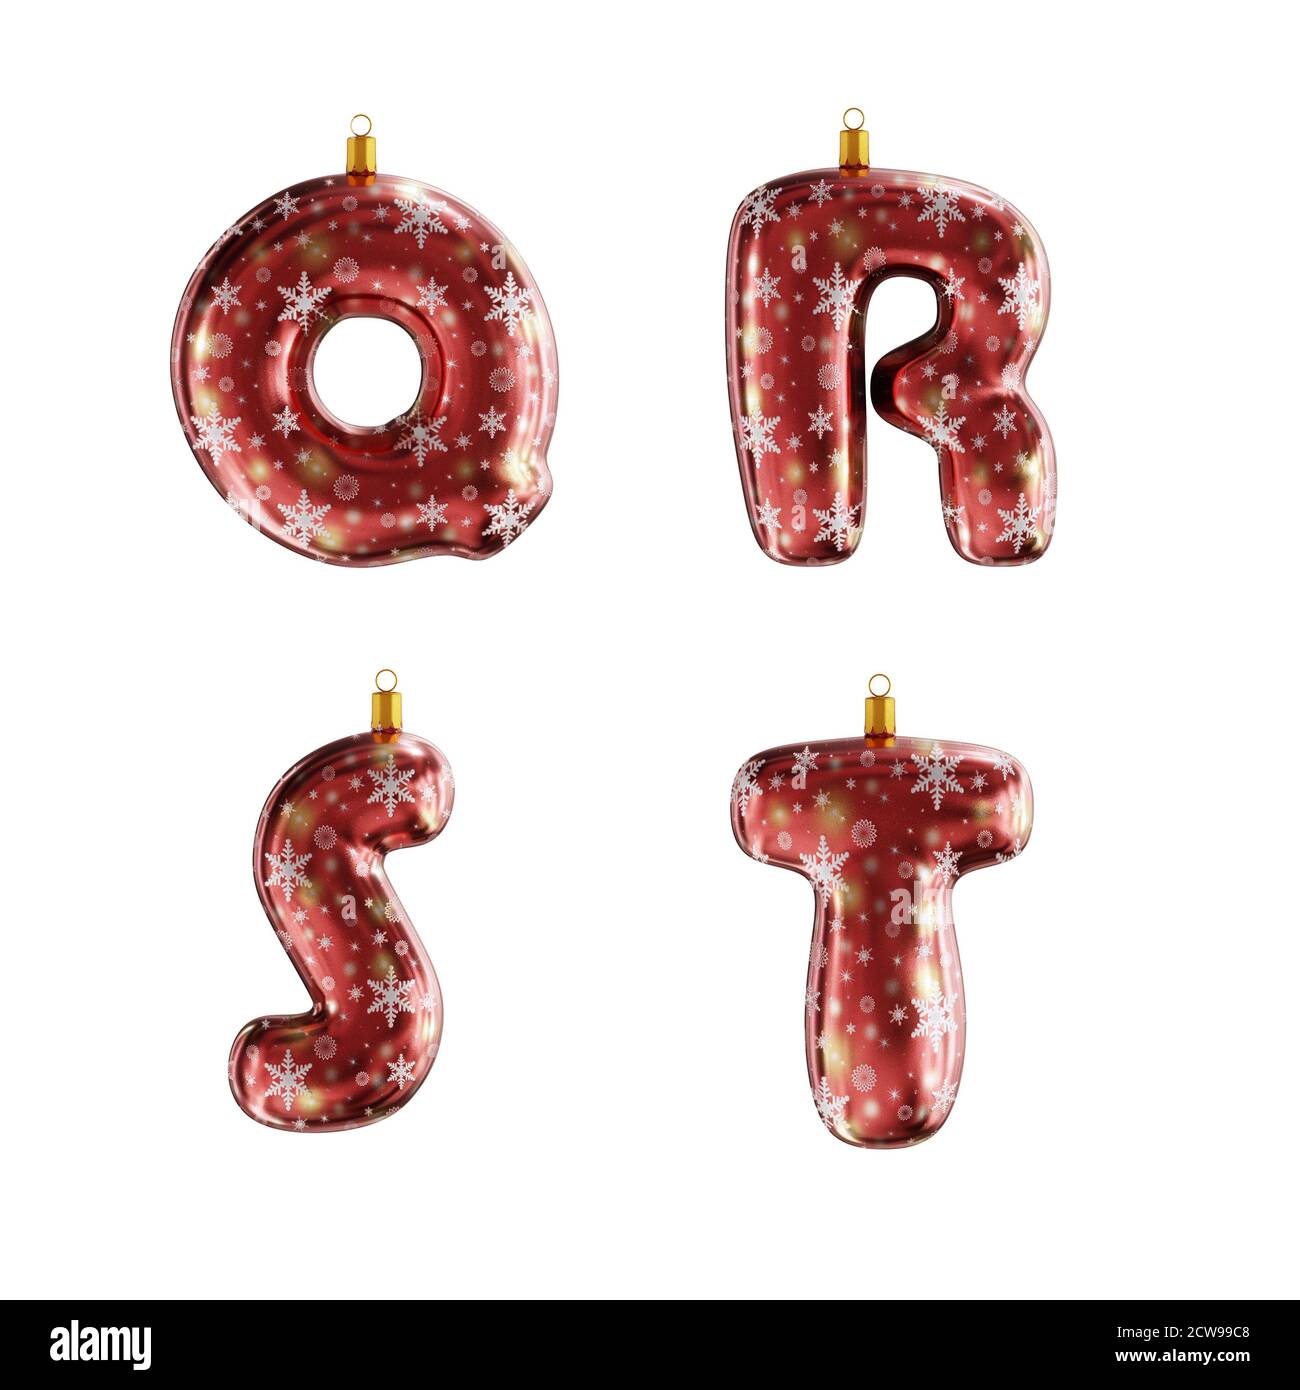 3D-Rendering von roten weihnachtsschmuck Alphabet auf weiß geschossen - Buchstaben Q-T Stockfoto